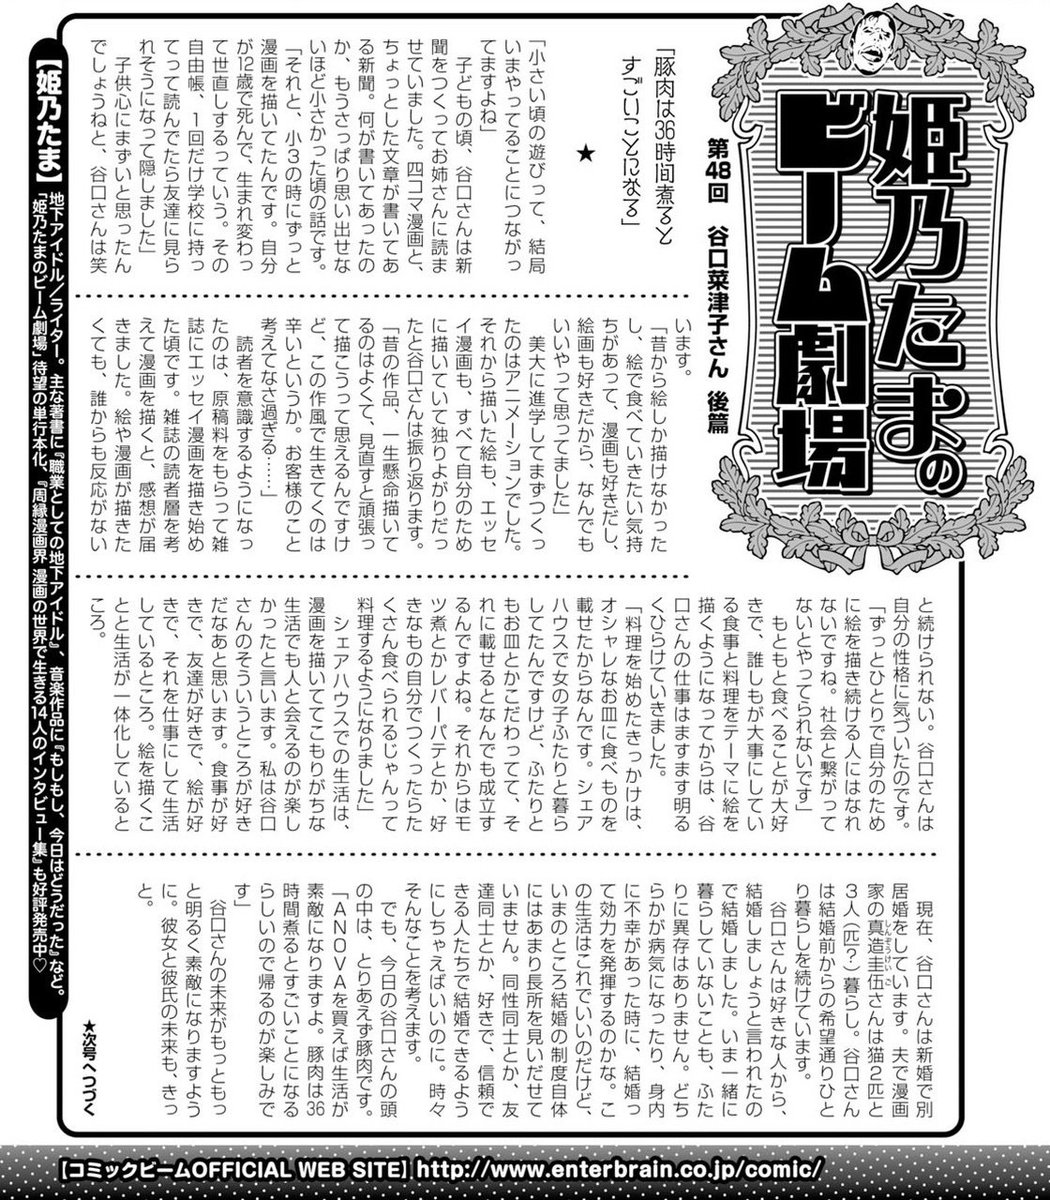 姫乃たまさん（@Himeeeno）に以前コミックビームでしていただいたインタビュー記事です。（許可取ってます！）
姫乃さんのインタビューは普通のインタビューと違う！
面白いのでぜひ読んでいただけたら幸いです。

発売中の『彼女と彼… 